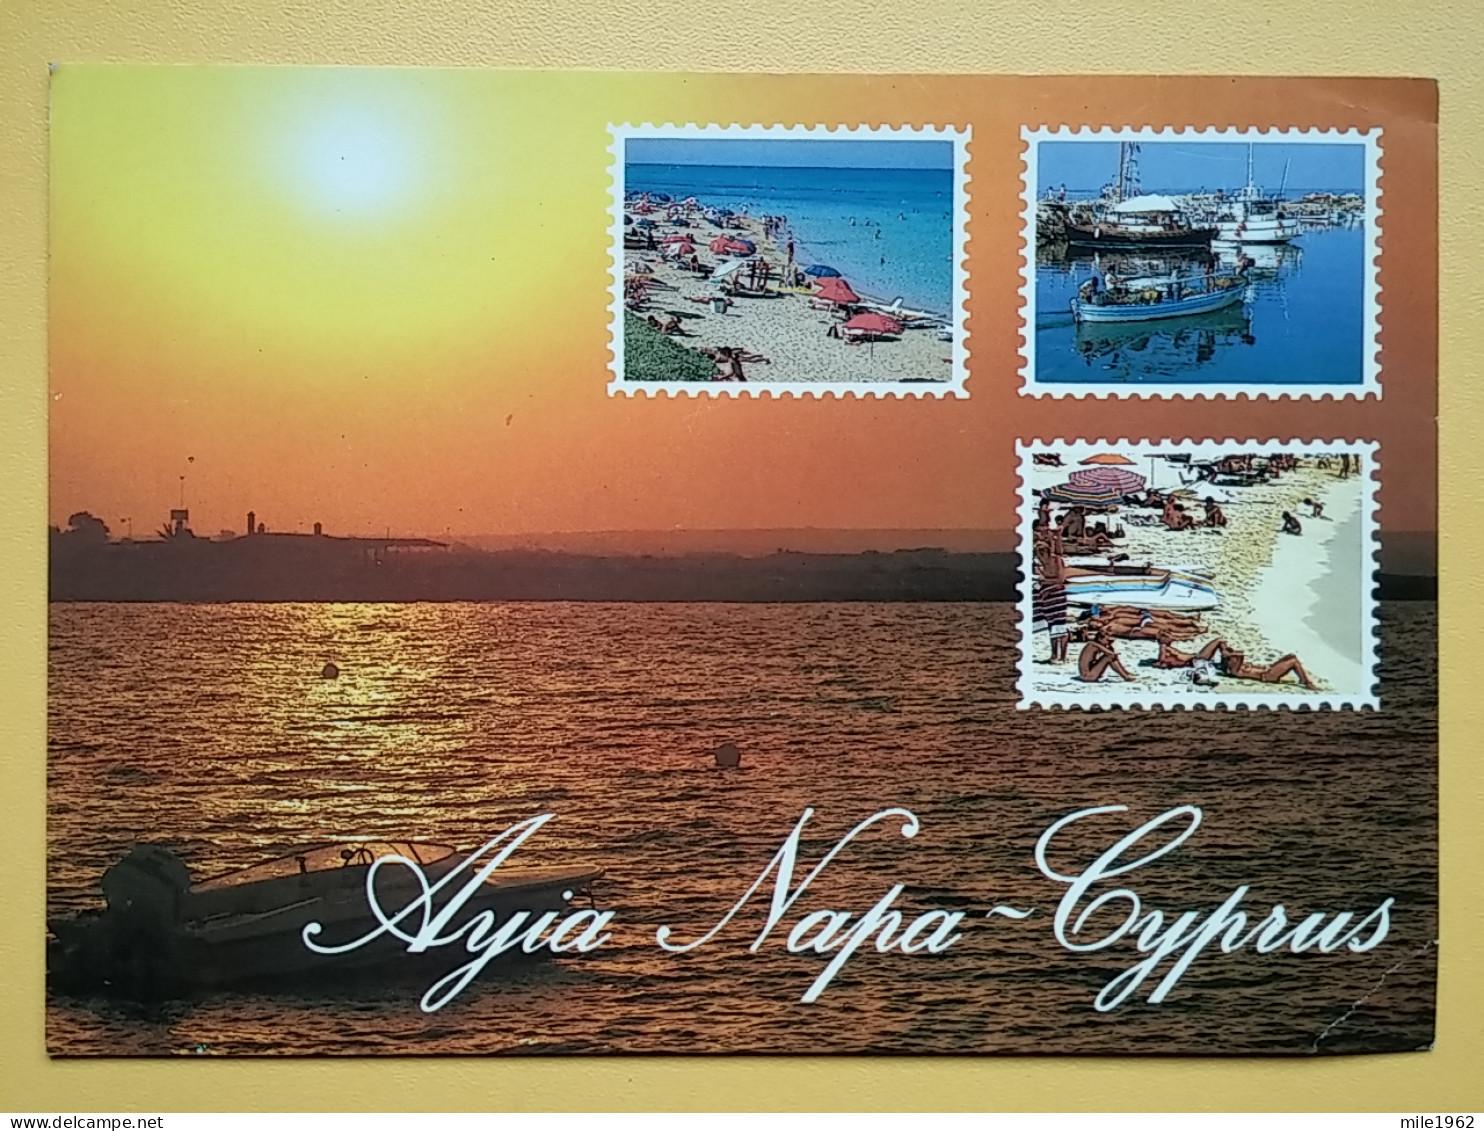 KOV 530-1 - CYPRUS - Cyprus